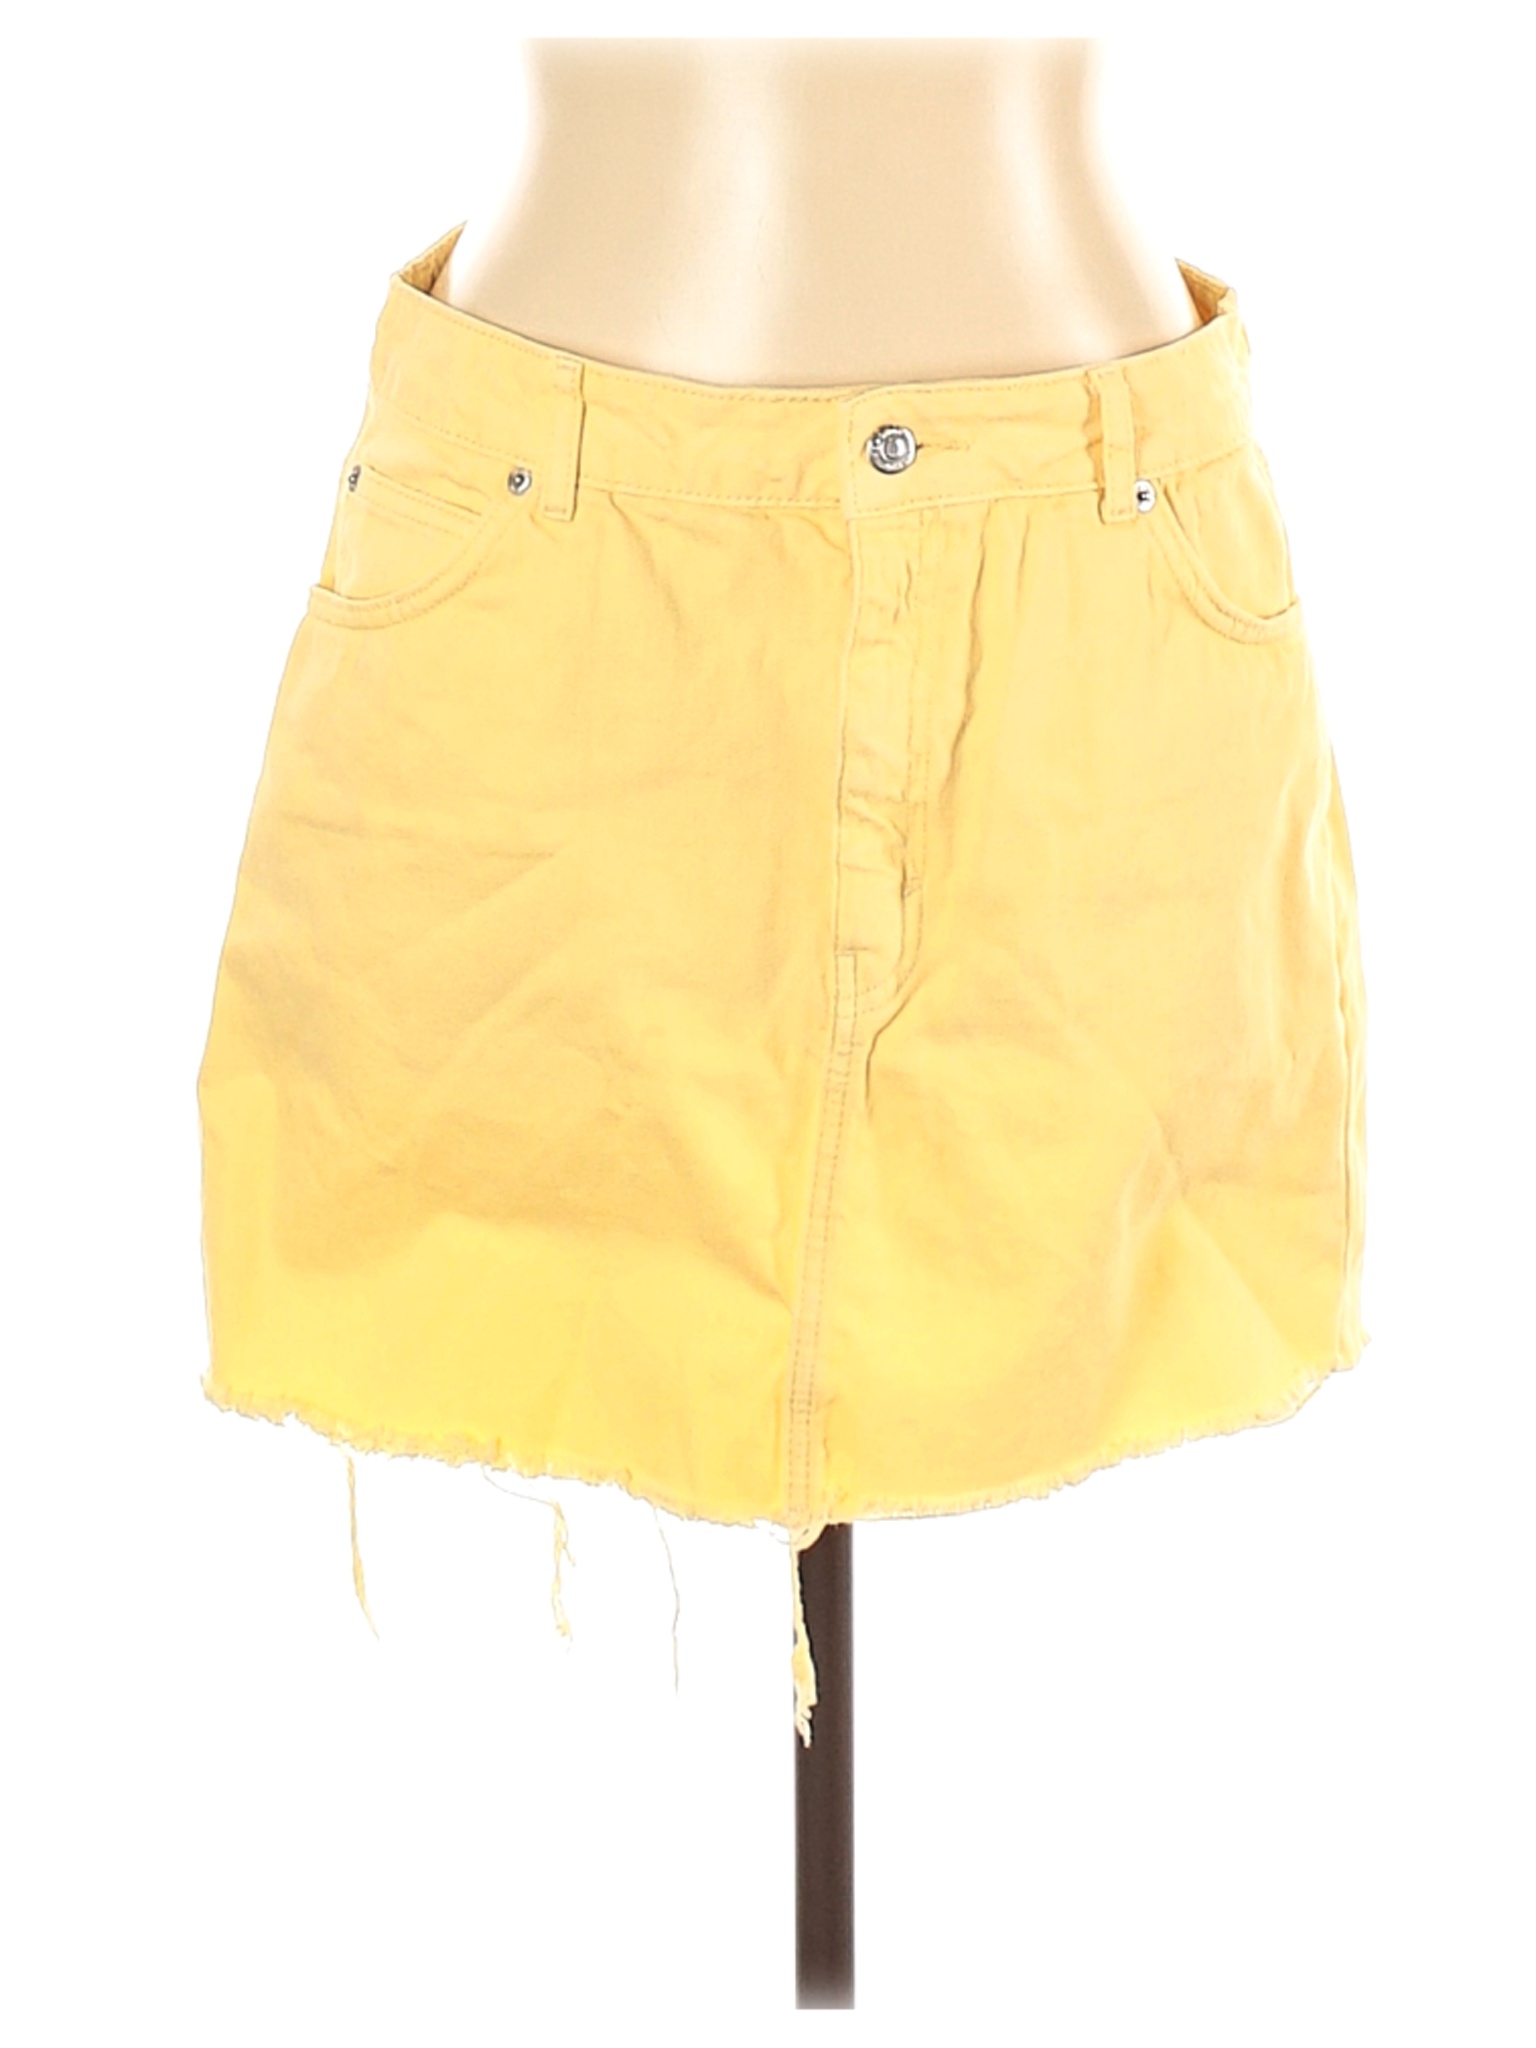 Topshop Women Yellow Denim Skirt 10 | eBay